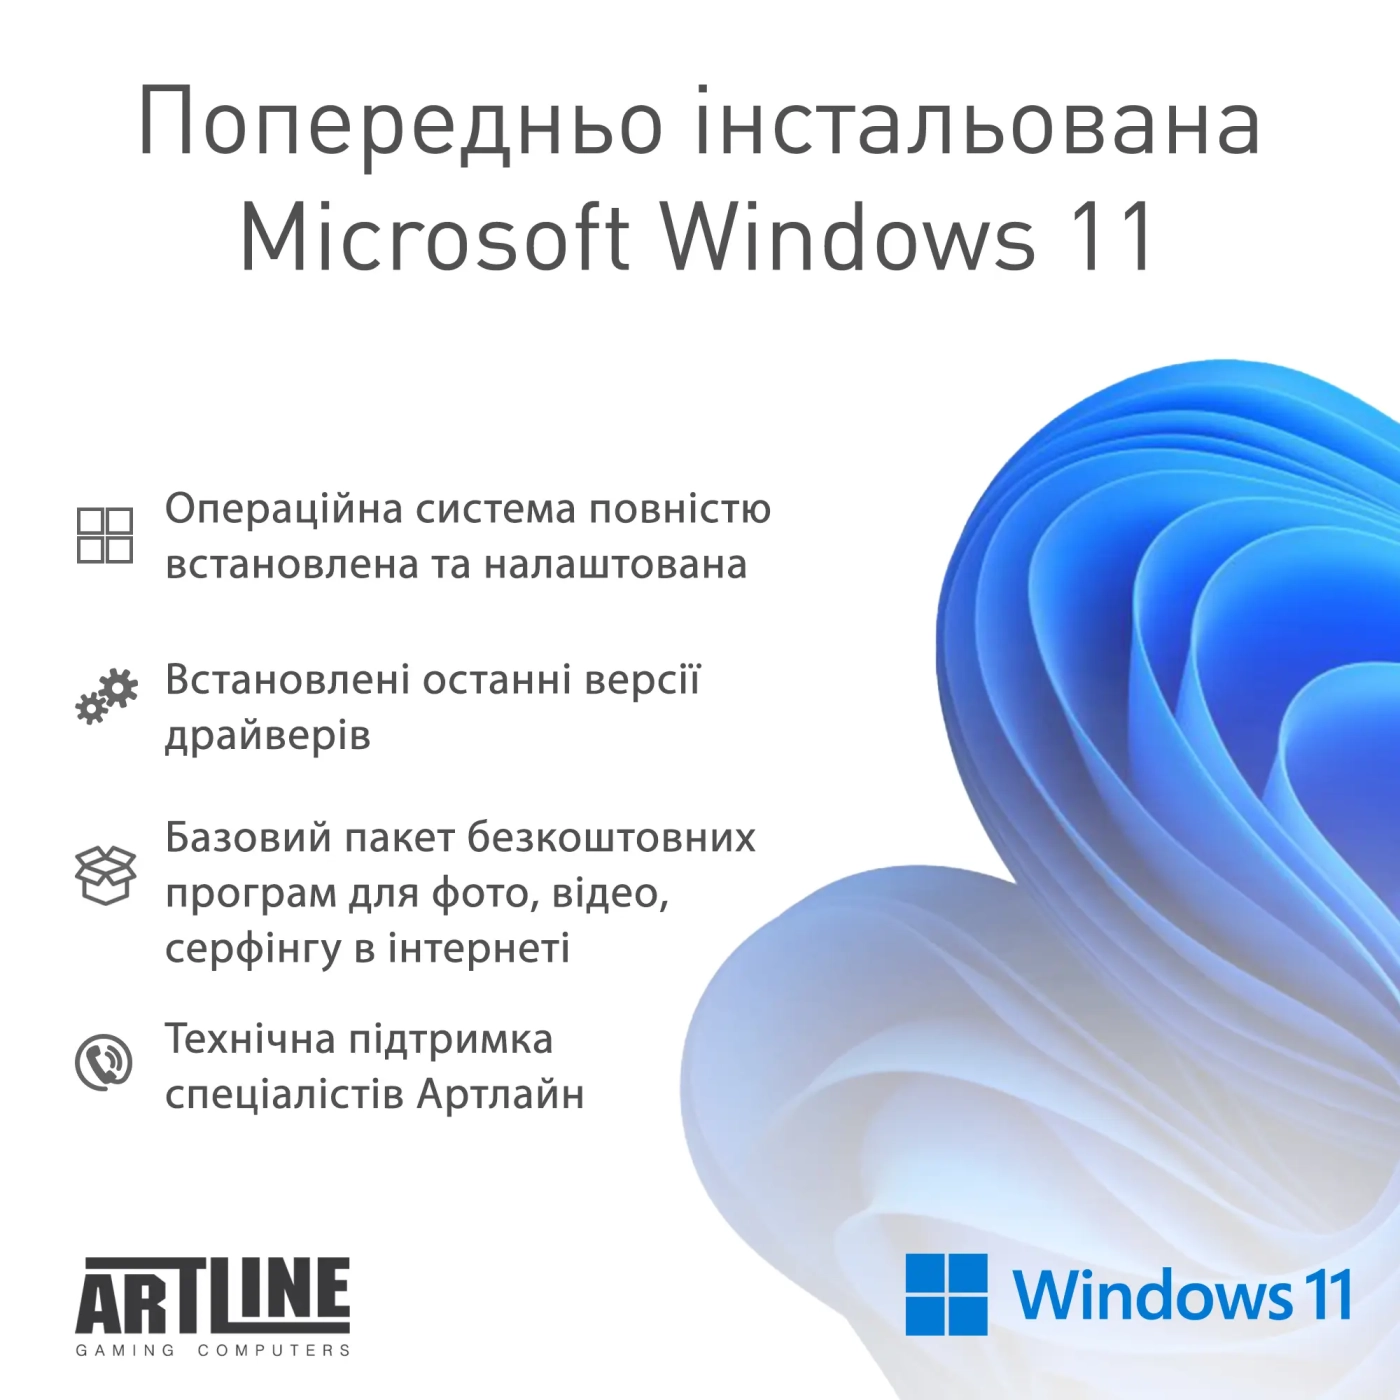 Купить Компьютер ARTLINE Gaming Y60 Windows 11 Home (Y60v11) - фото 9